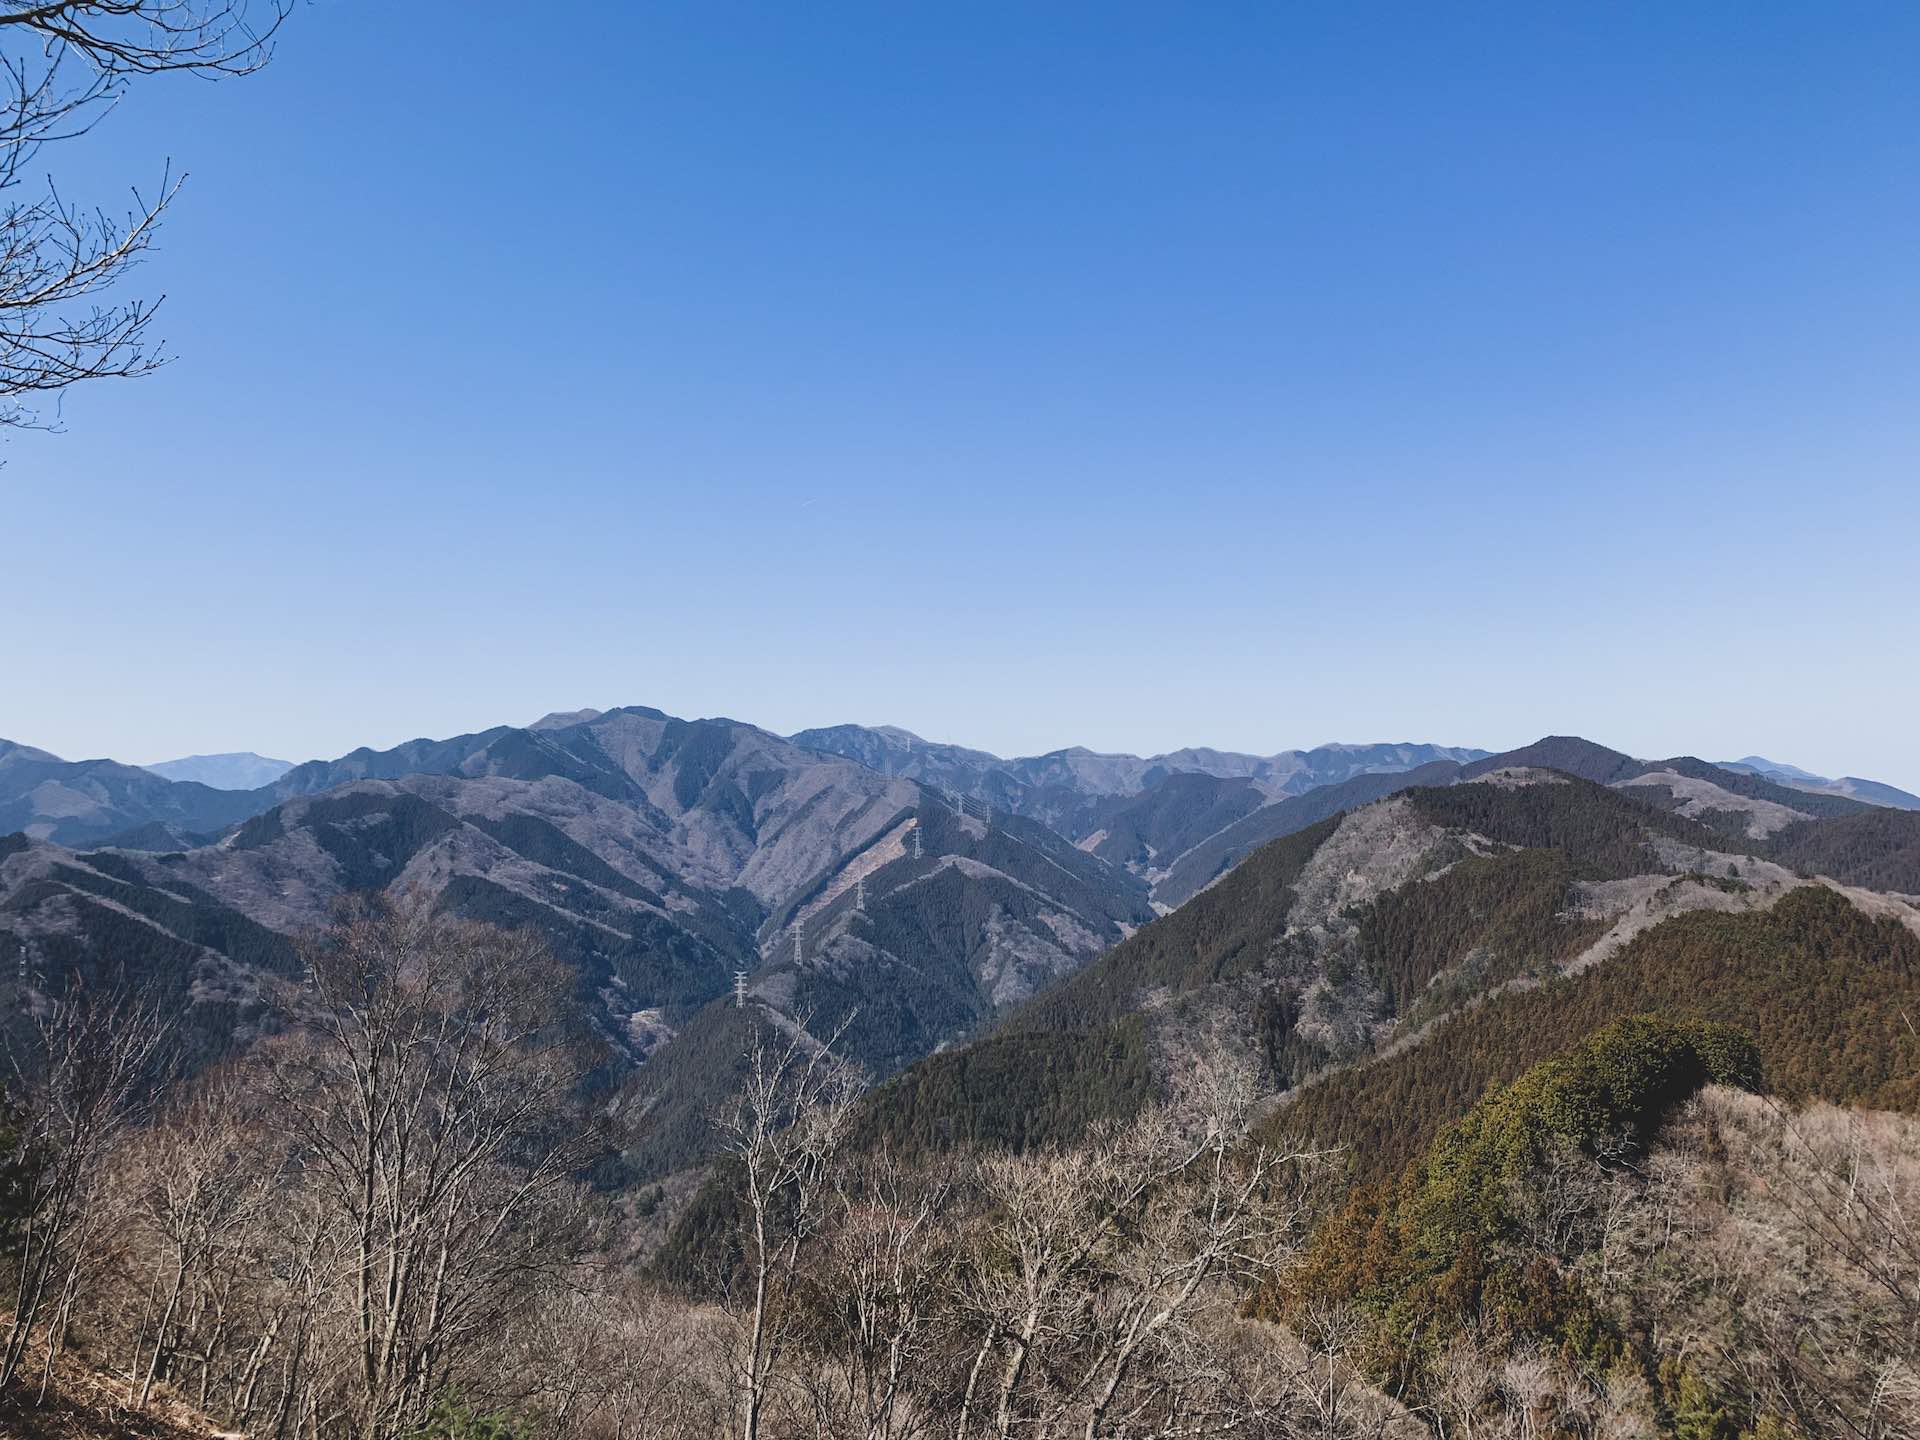 Chichibu-Tama-Kai National Park: 3 Stunning Hikes Near Tokyo, Japan, Lucy Dayman, Lucid, LUC001, Mt Takamizu, Photo Credit @deanaizawa, Mountain range, blue sky